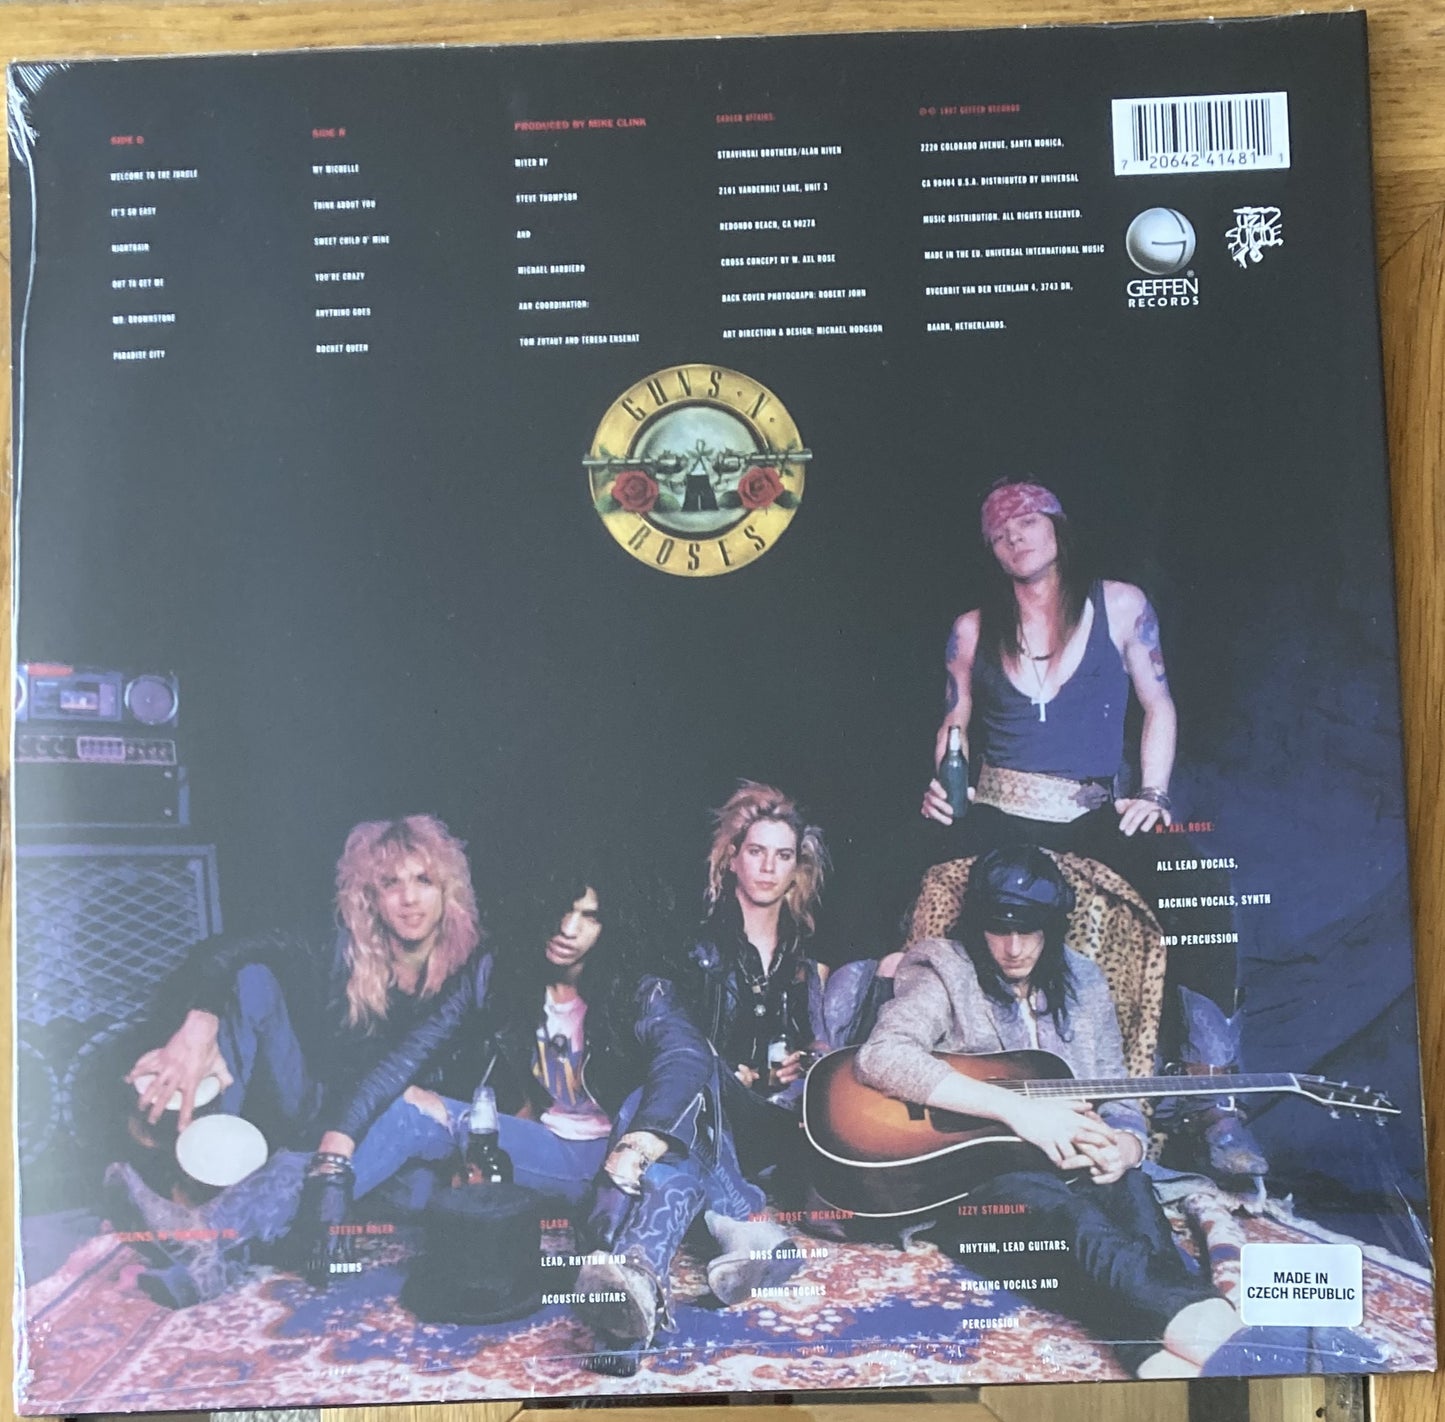 The back of 'Guns'n'Roses - Appetite for Destruction' on vinyl